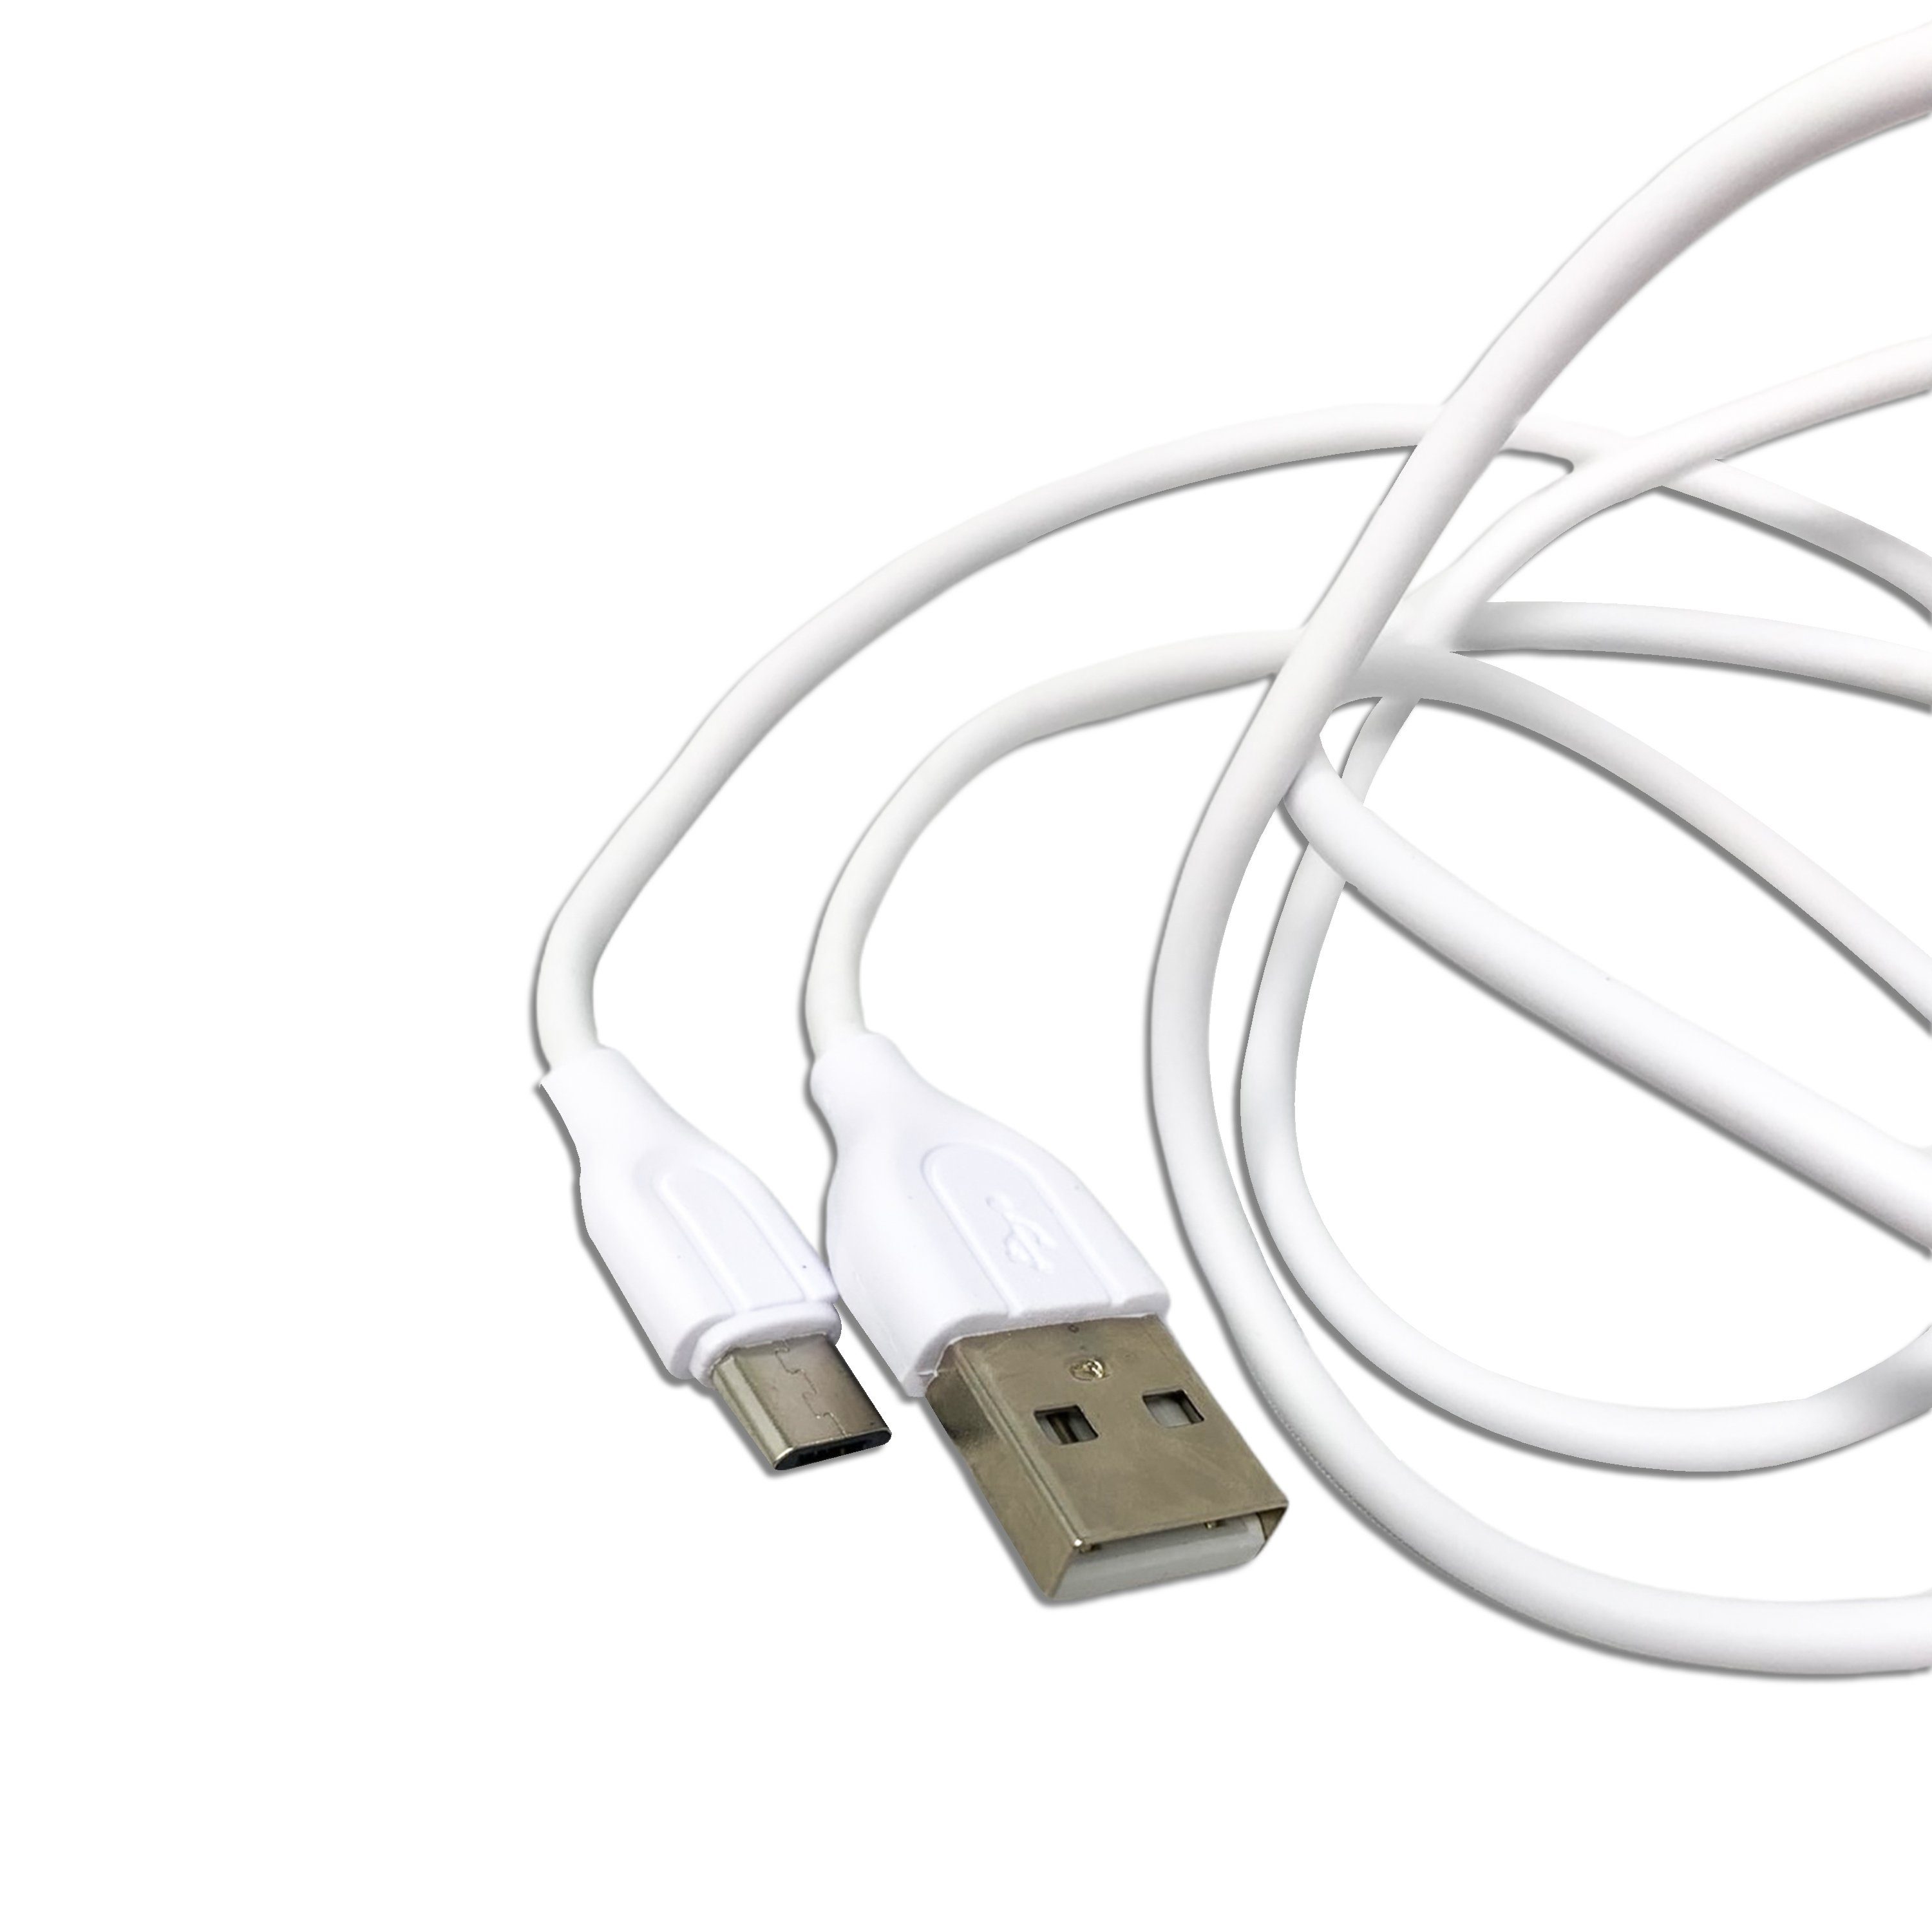 H-basics »Micro USB Ladekabel 1 Meter - 0.8A, 4W, ABS für Samsung Galaxy S7/  S6/ J7/ Note 5,Xiaomi,Huawei etc.« USB-Ladegerät online kaufen | OTTO